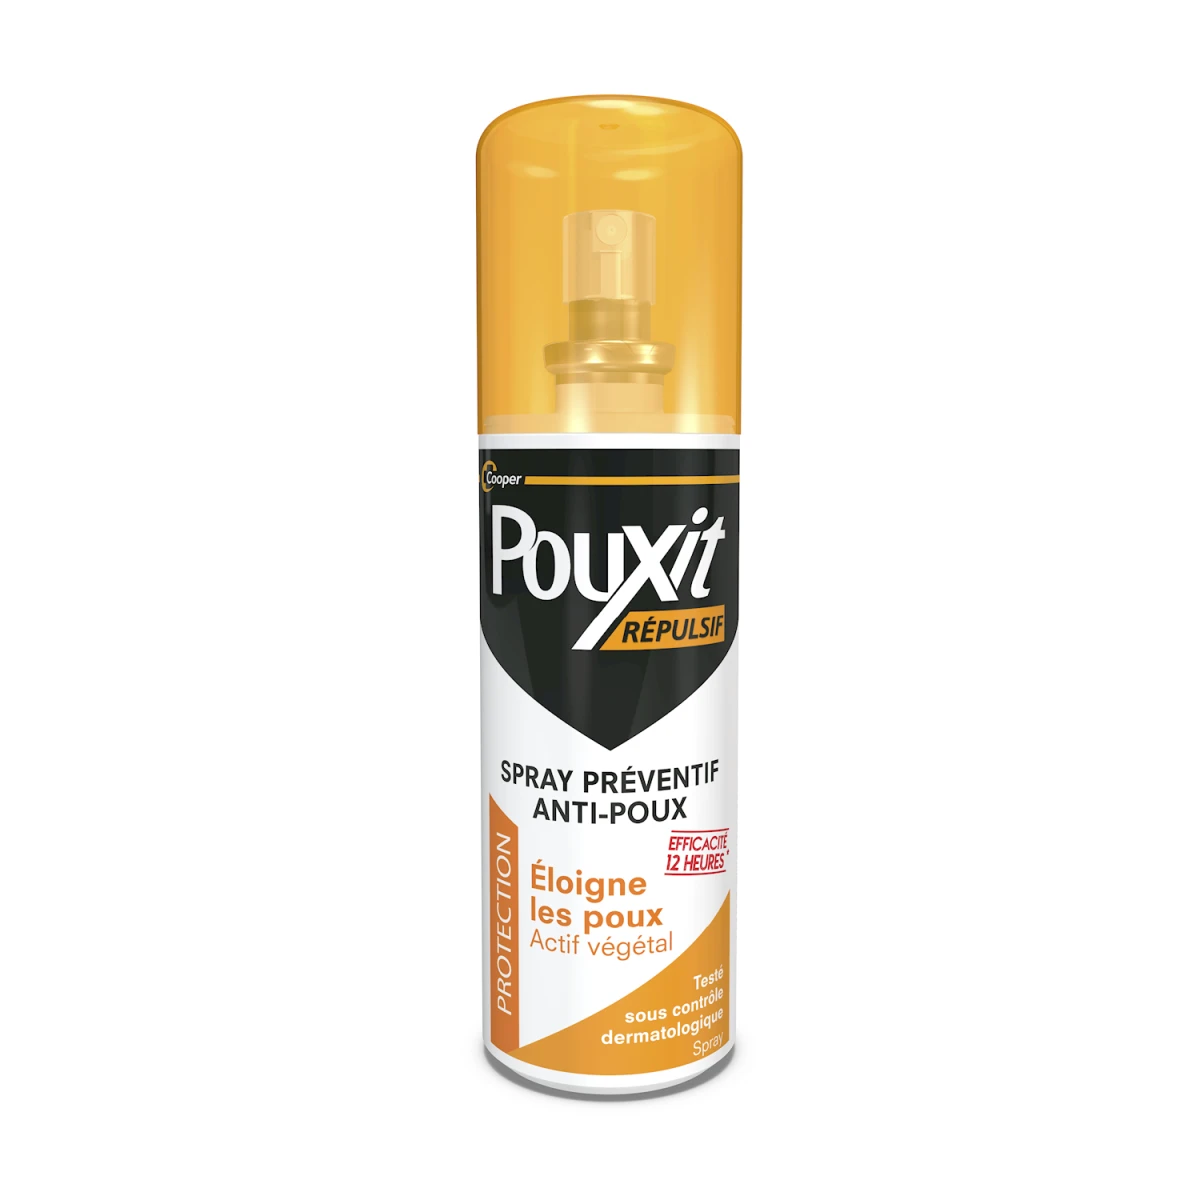 PouxiDerm Spray Anti-Poux Répulsif & Préventif 100ML